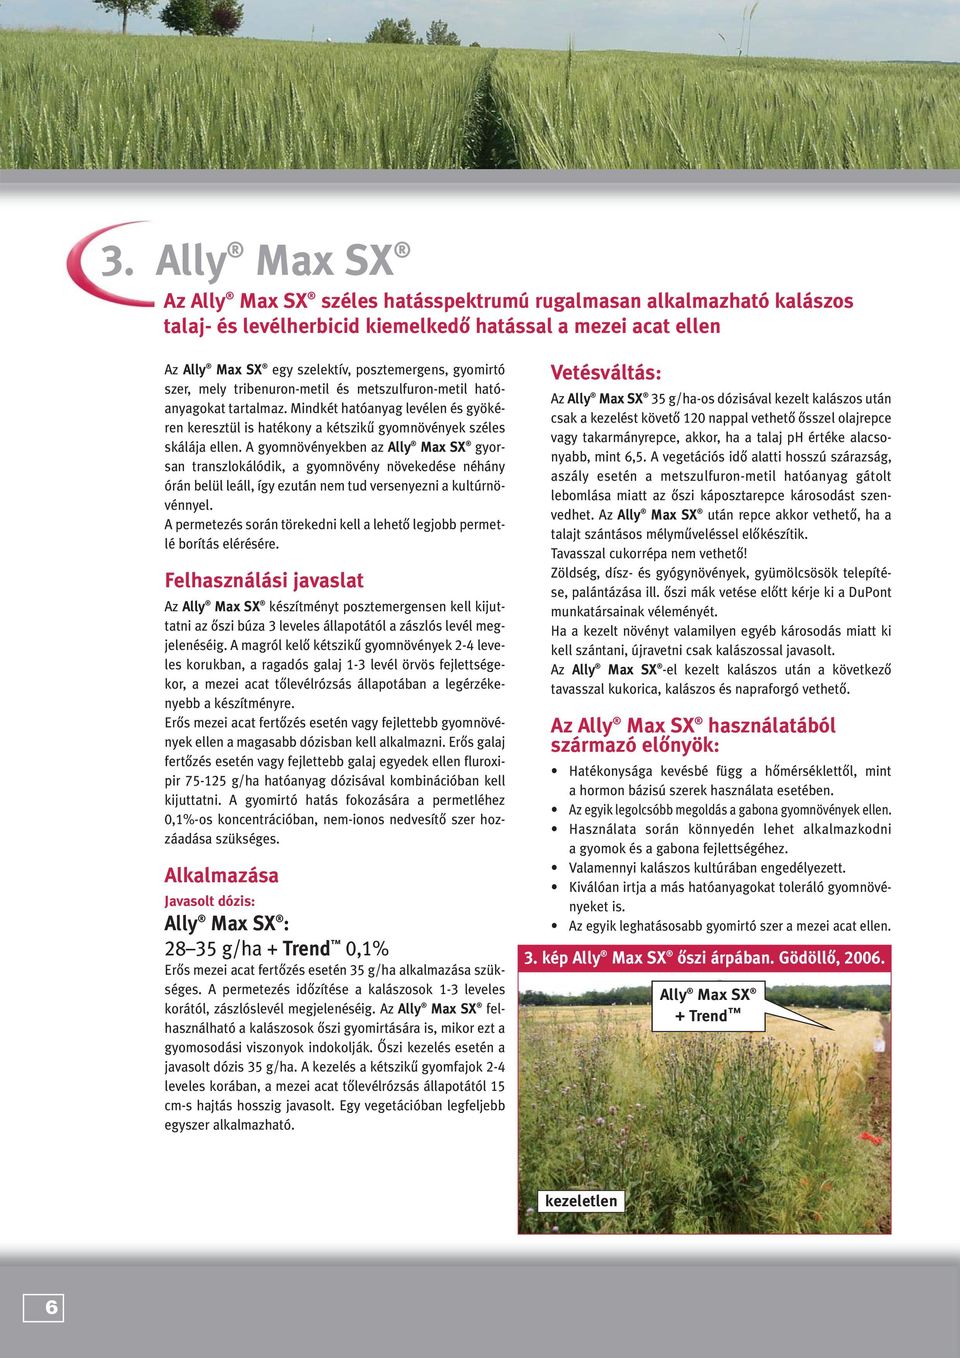 A gyomnövényekben az Ally Max SX gyorsan transzlokálódik, a gyomnövény növekedése néhány órán belül leáll, így ezután nem tud versenyezni a kultúrnövénnyel.